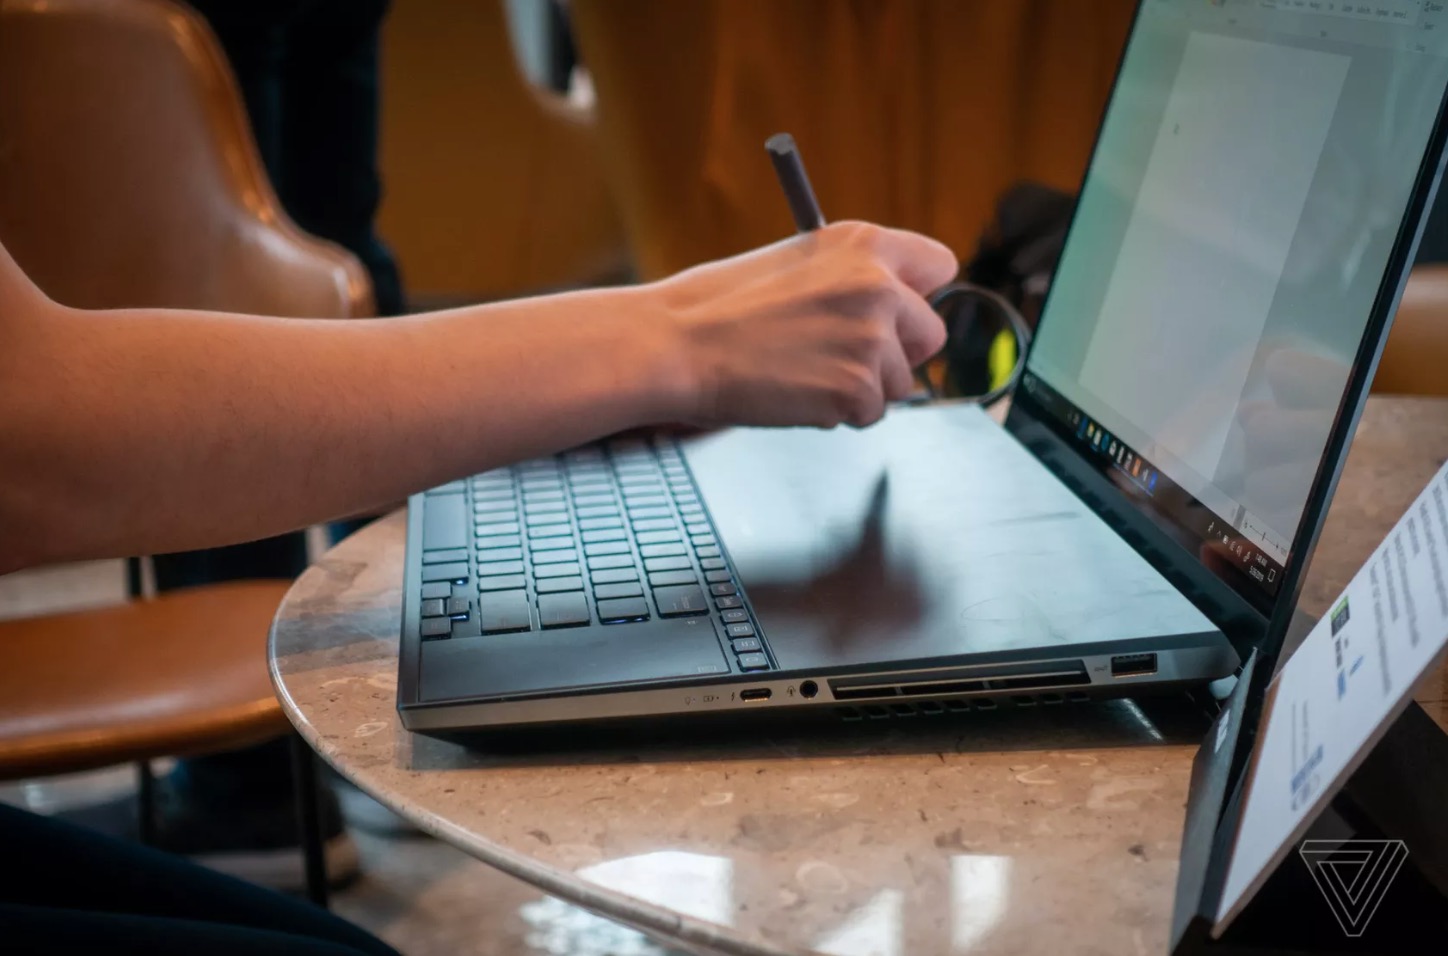 [Computex 2019] ASUS
ra mắt laptop ZenBook Pro Duo siêu khủng với hai màn hình
4K, Intel Core i9, RTX 2060